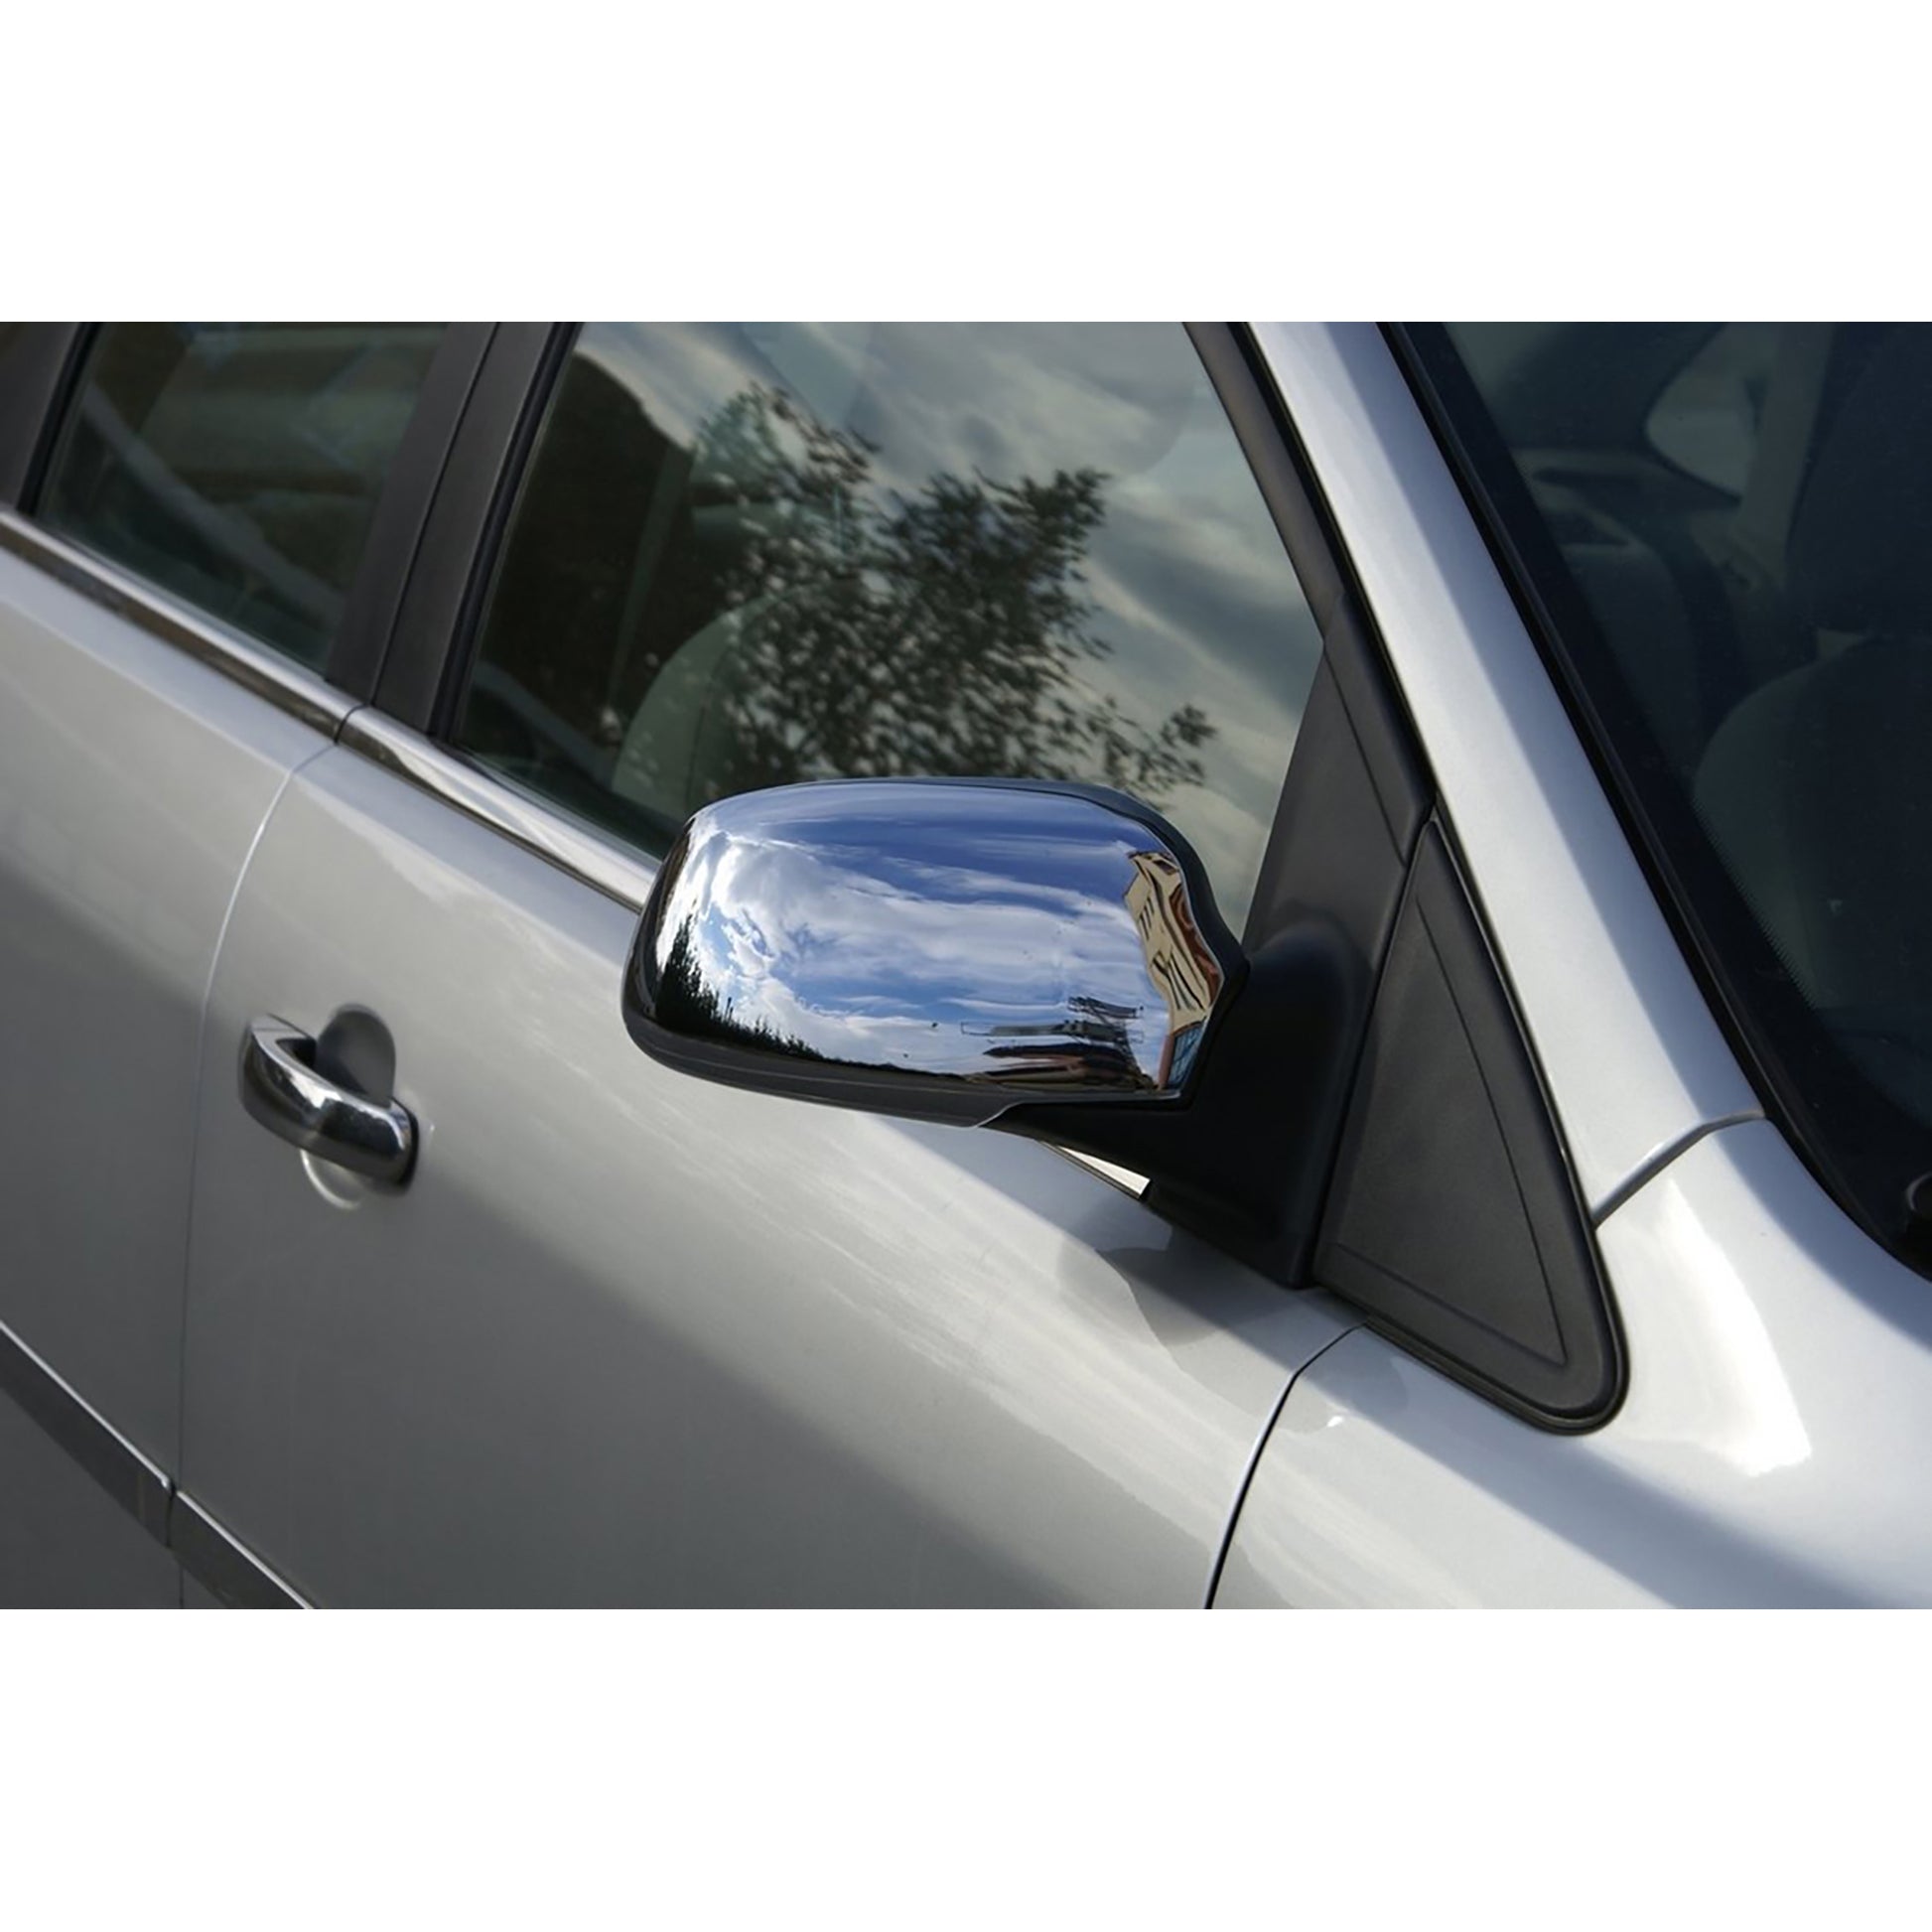 Ford Fiesta Krom Ayna Kapağı Aksesuarları Detaylı Resimleri, Kampanya bilgileri ve fiyatı - 1